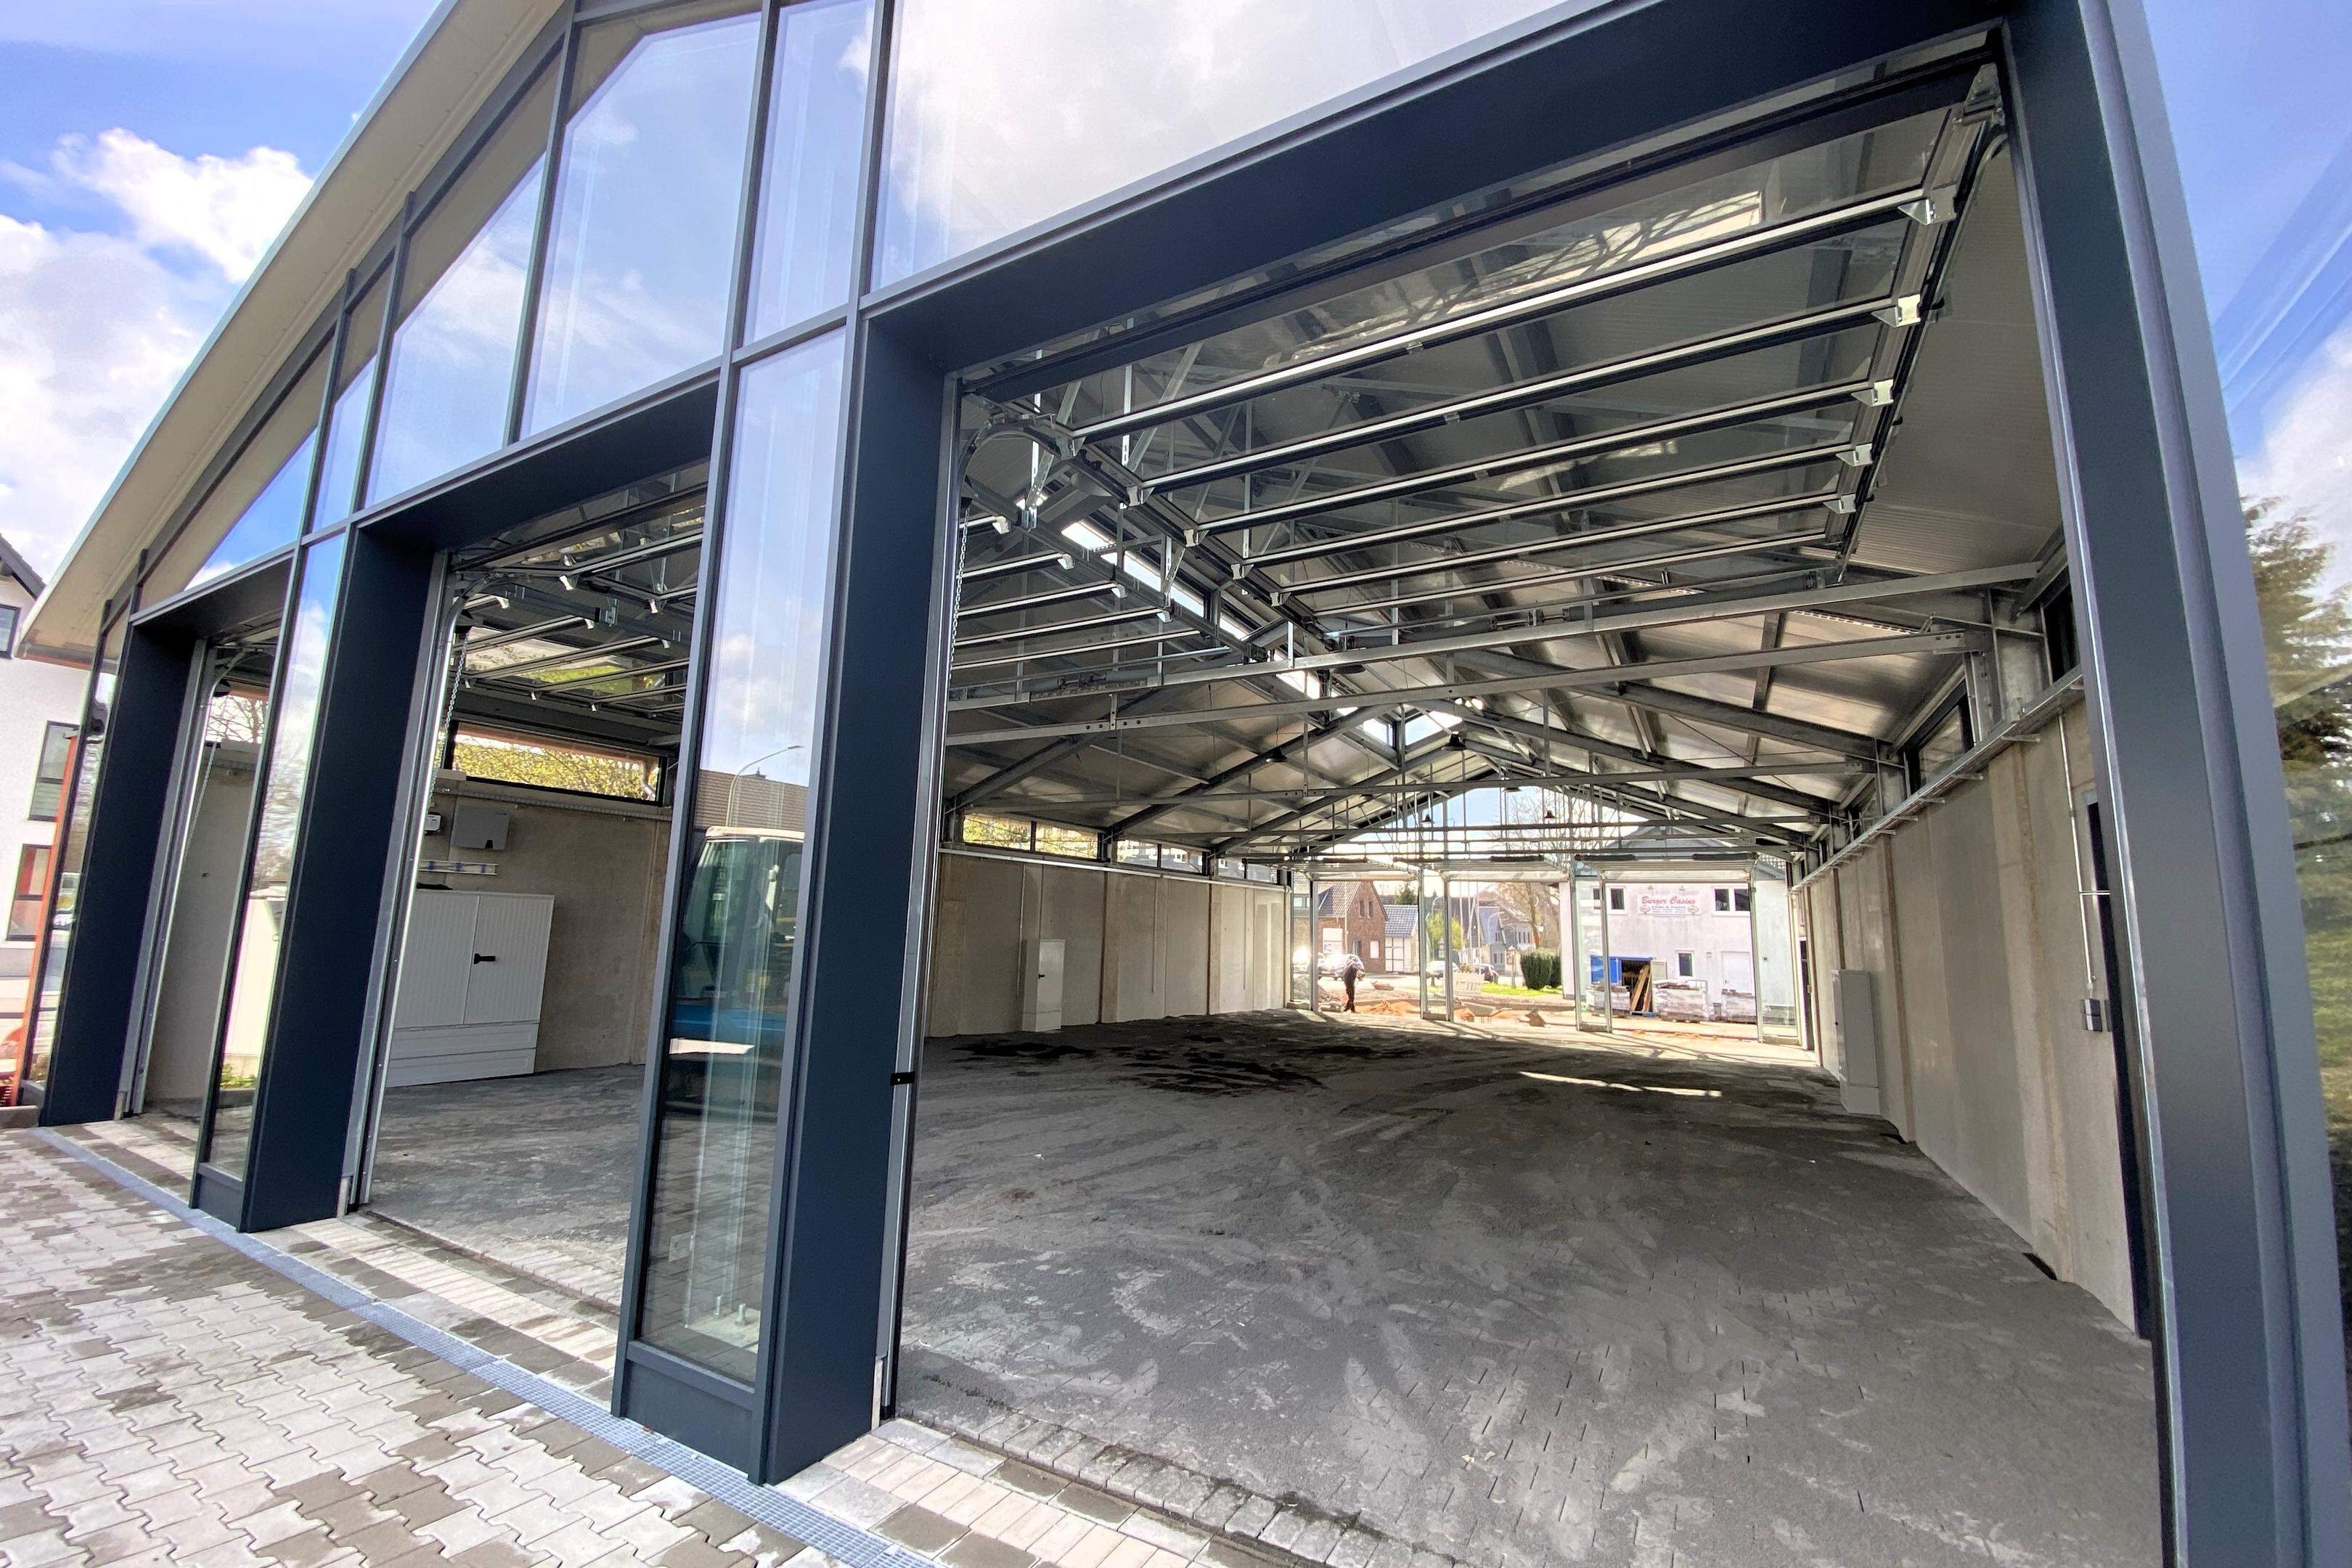 Am 4. Mai öffnet die neue Markthalle in Imgenbroich erstmals ihre Glastore für den Wochenmarkt.